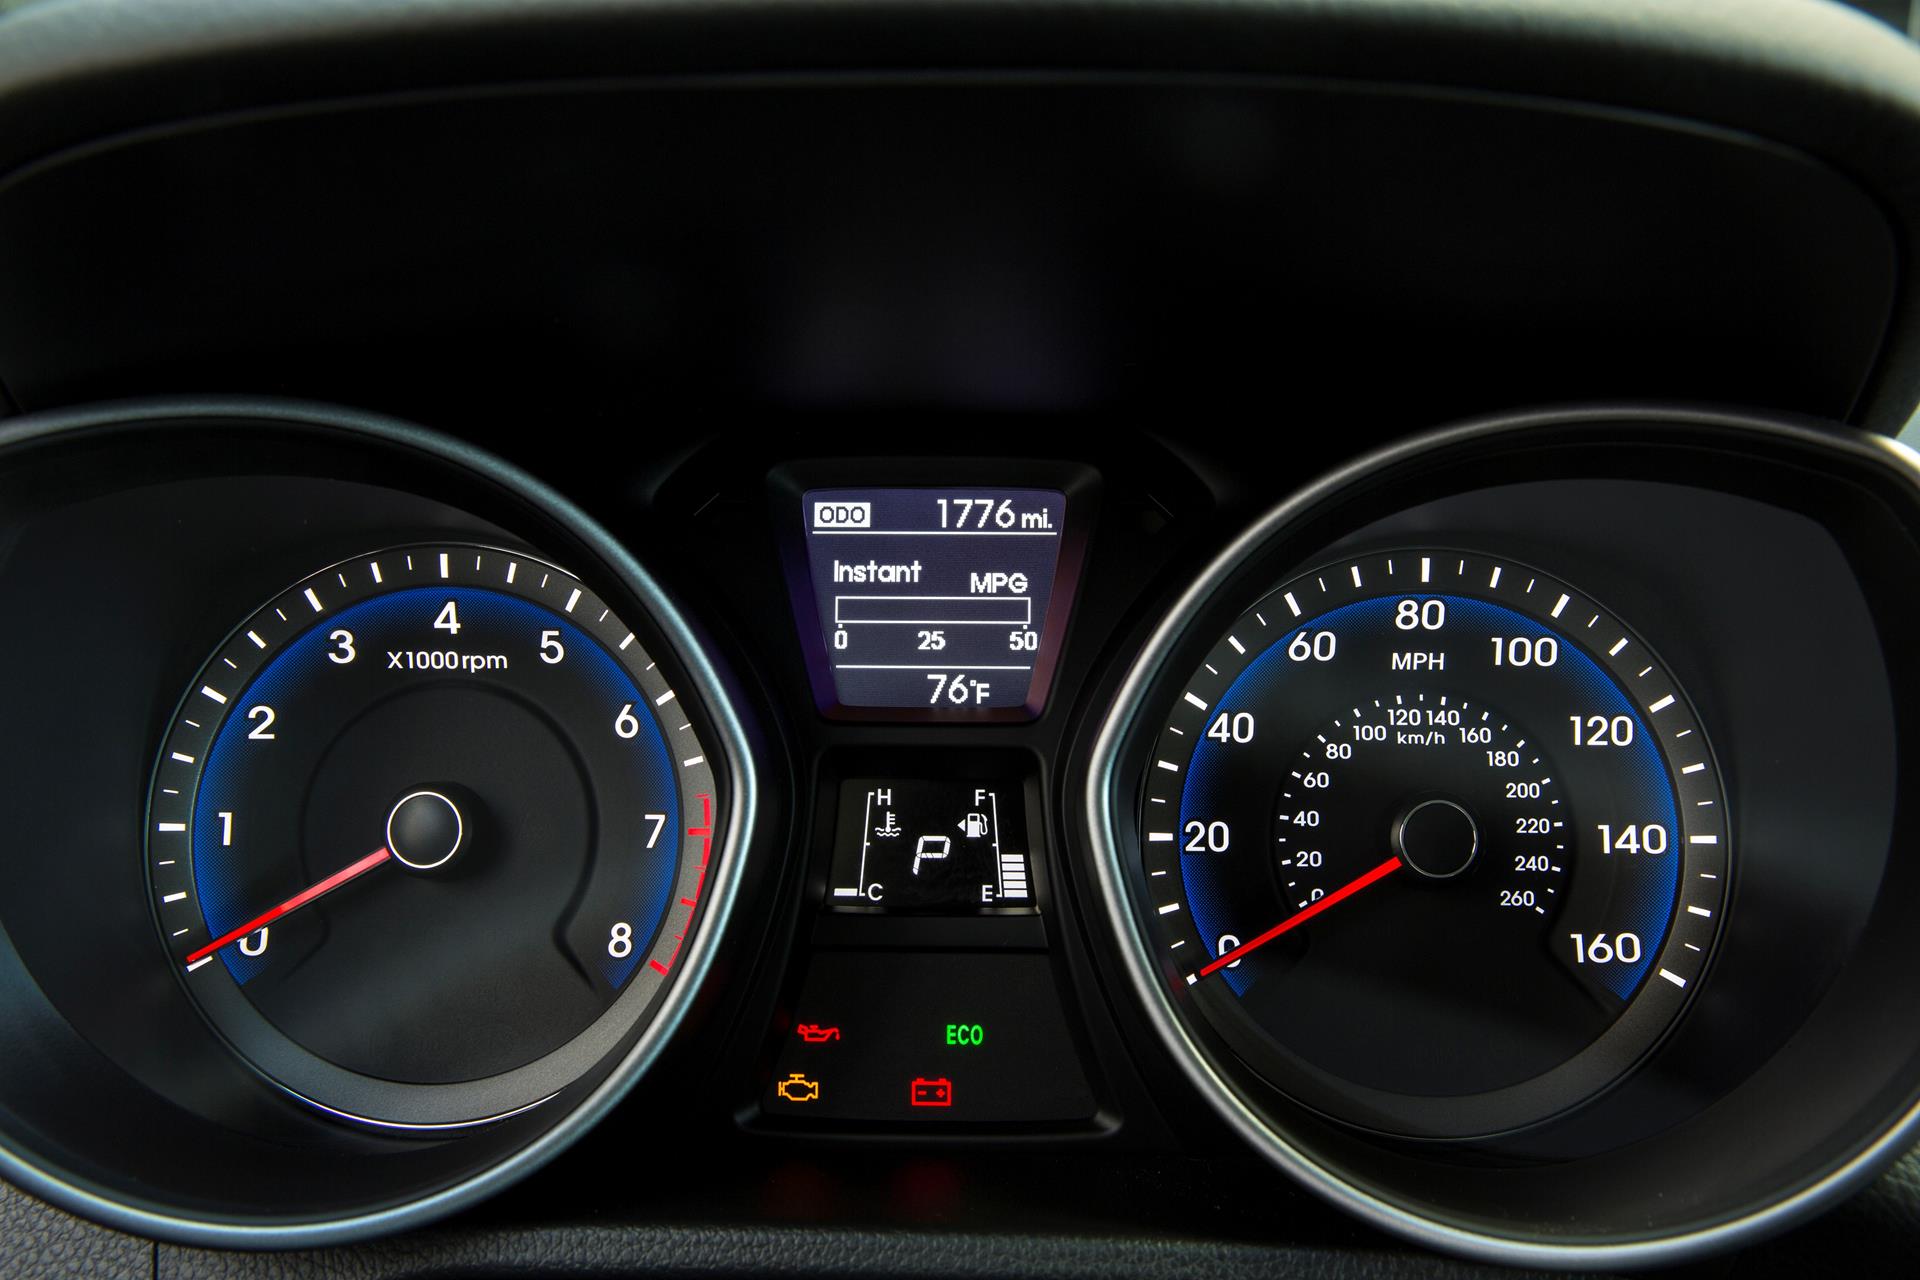 2016 Hyundai Elantra GT